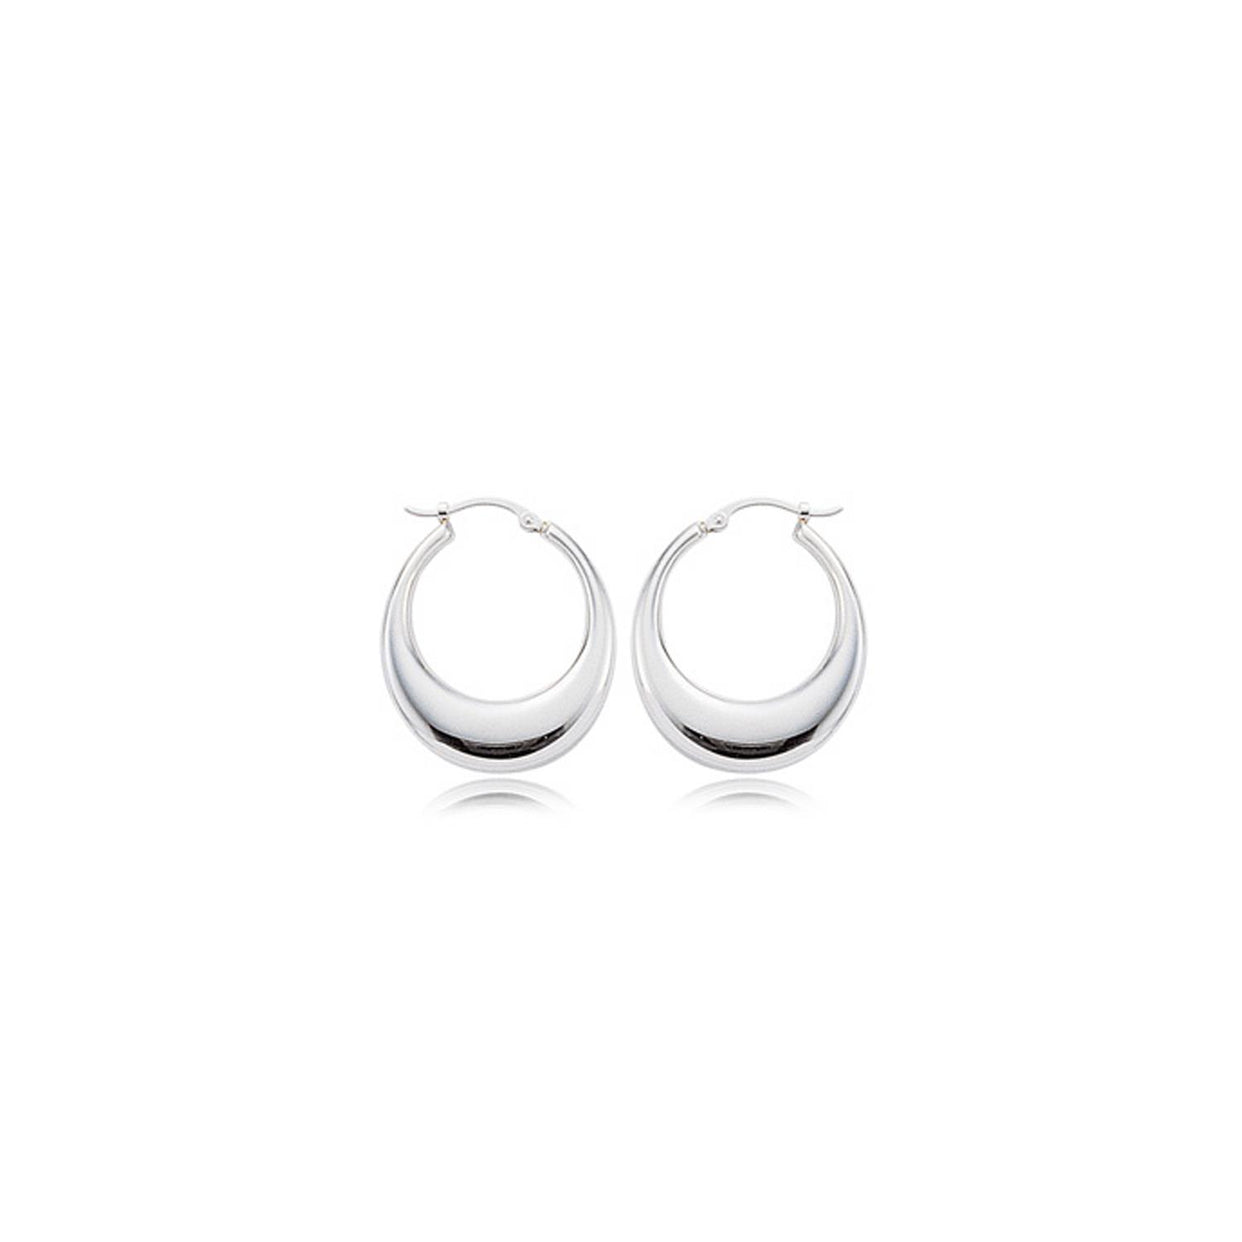 Sterling Silver Shell Hoop Earrings